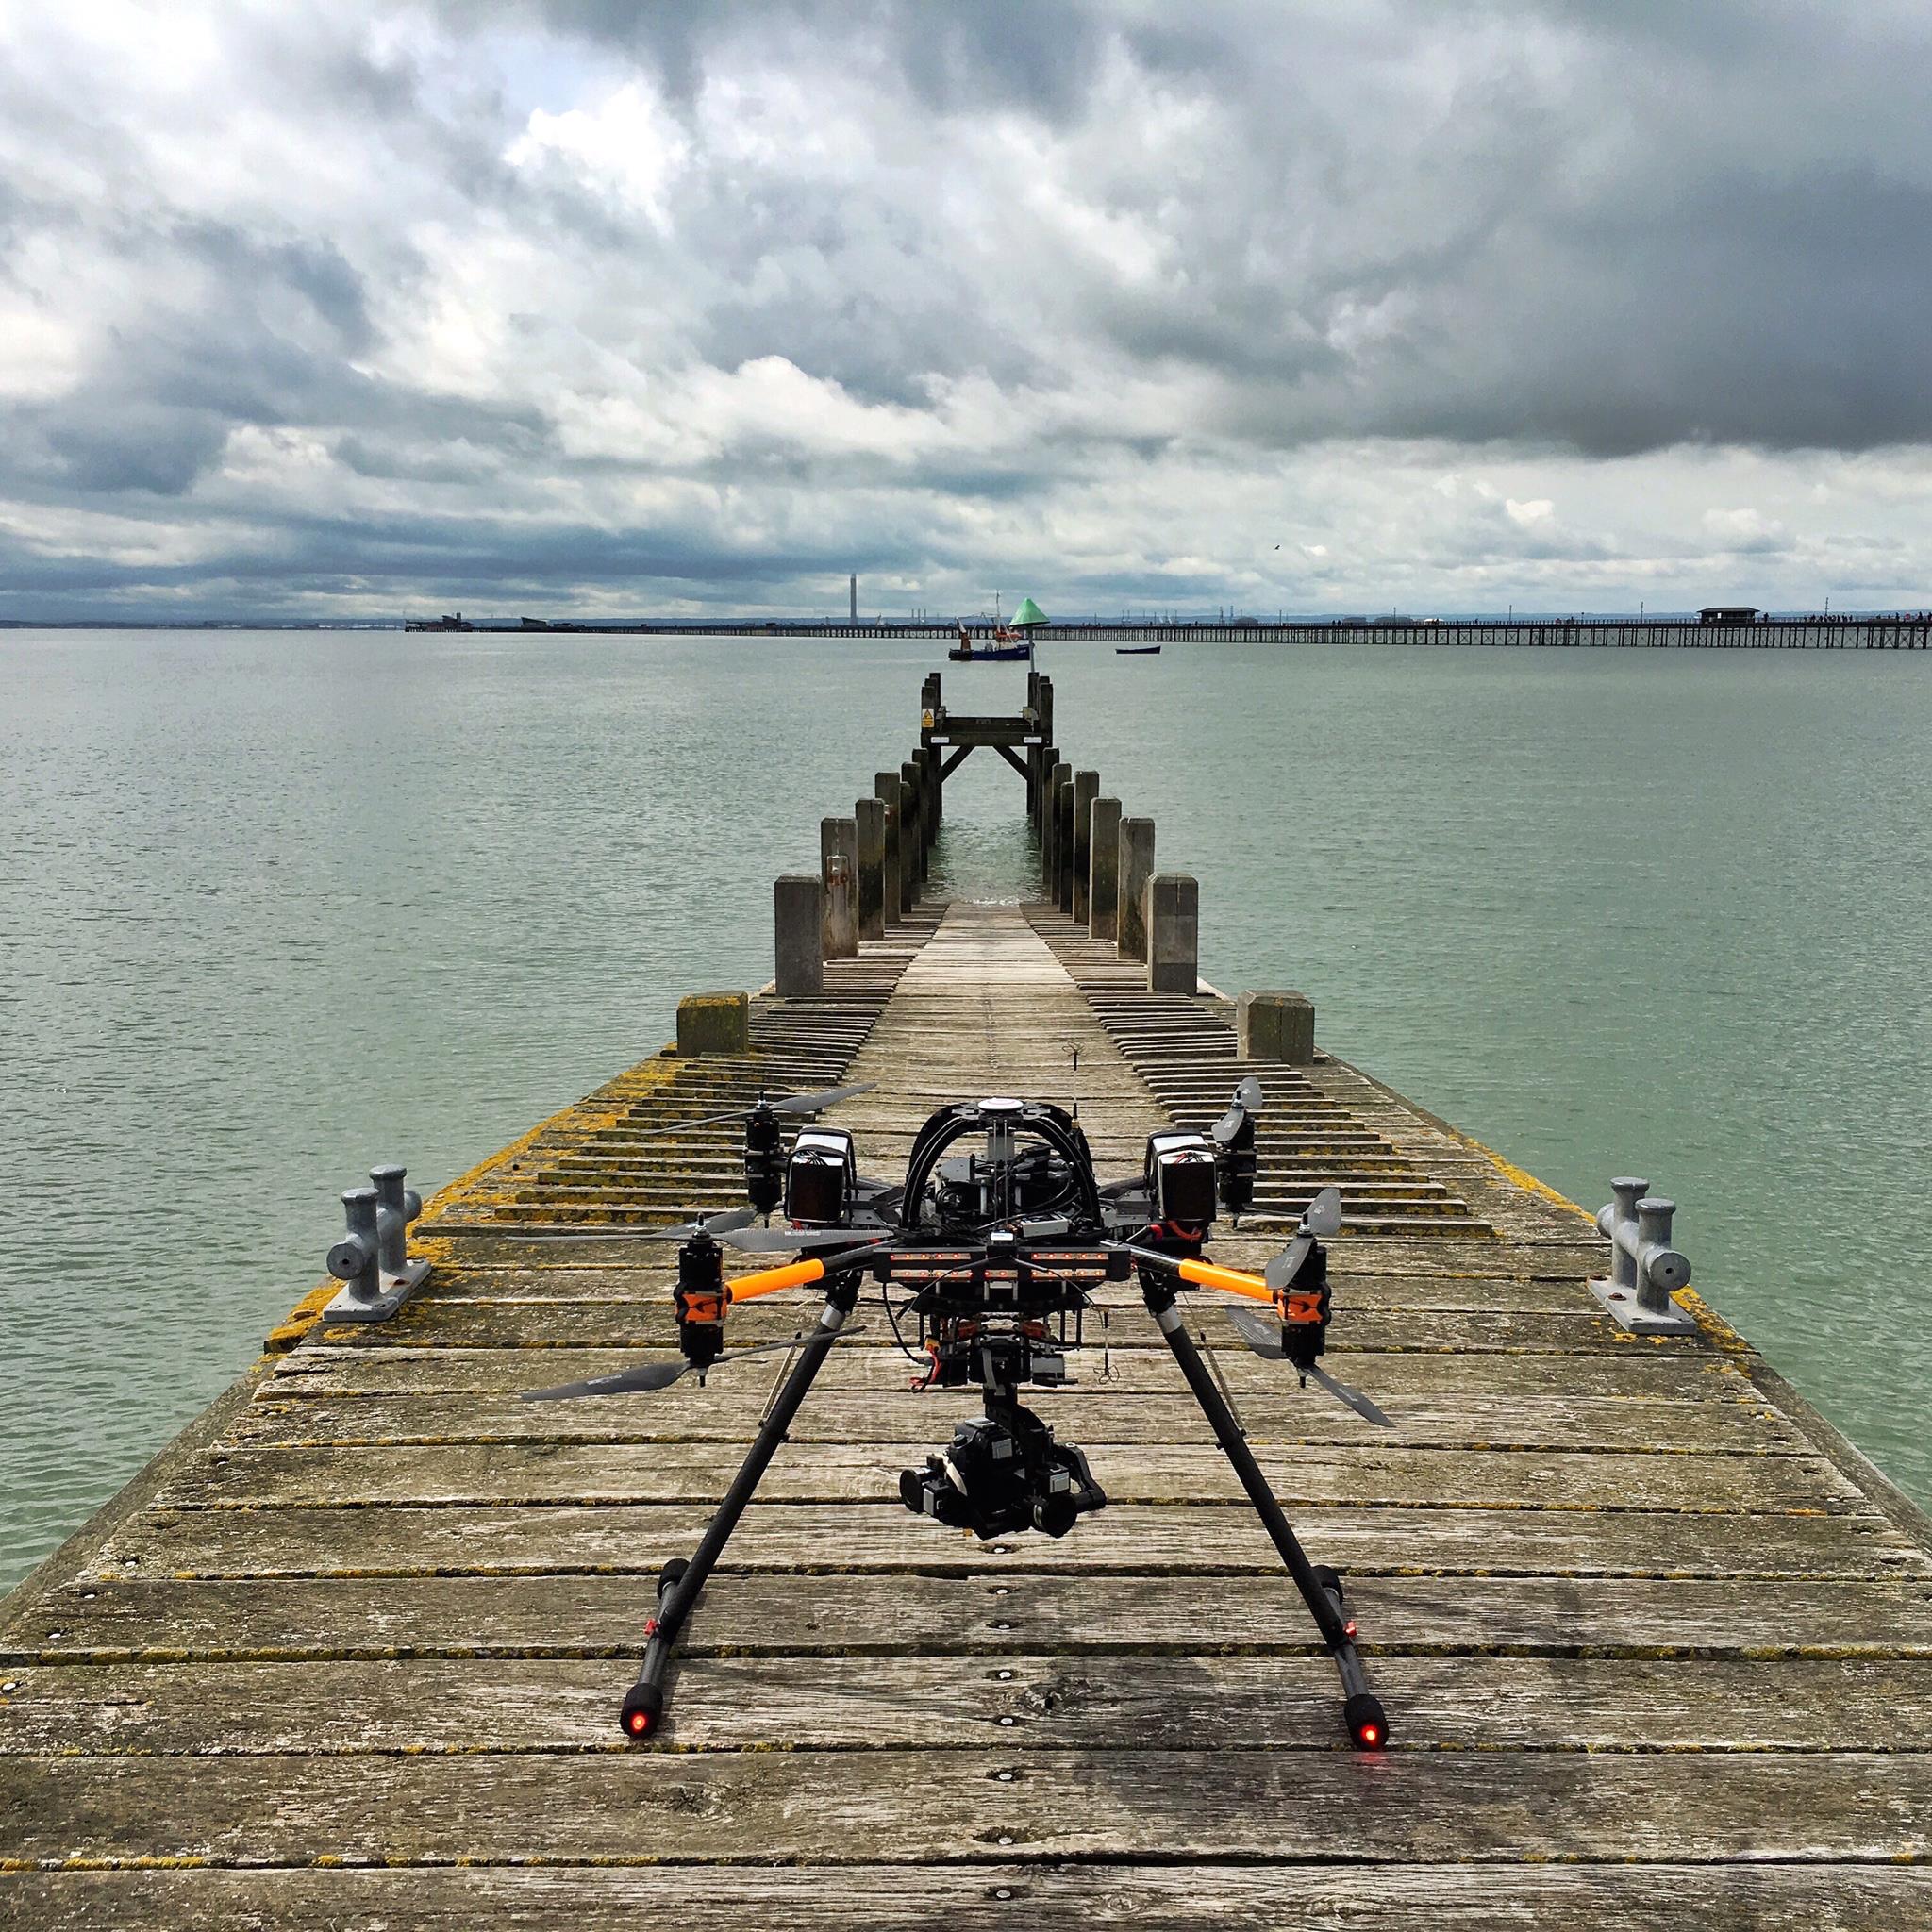 Drone-location-location-location-runway-sea-skyjib-aerialfilming